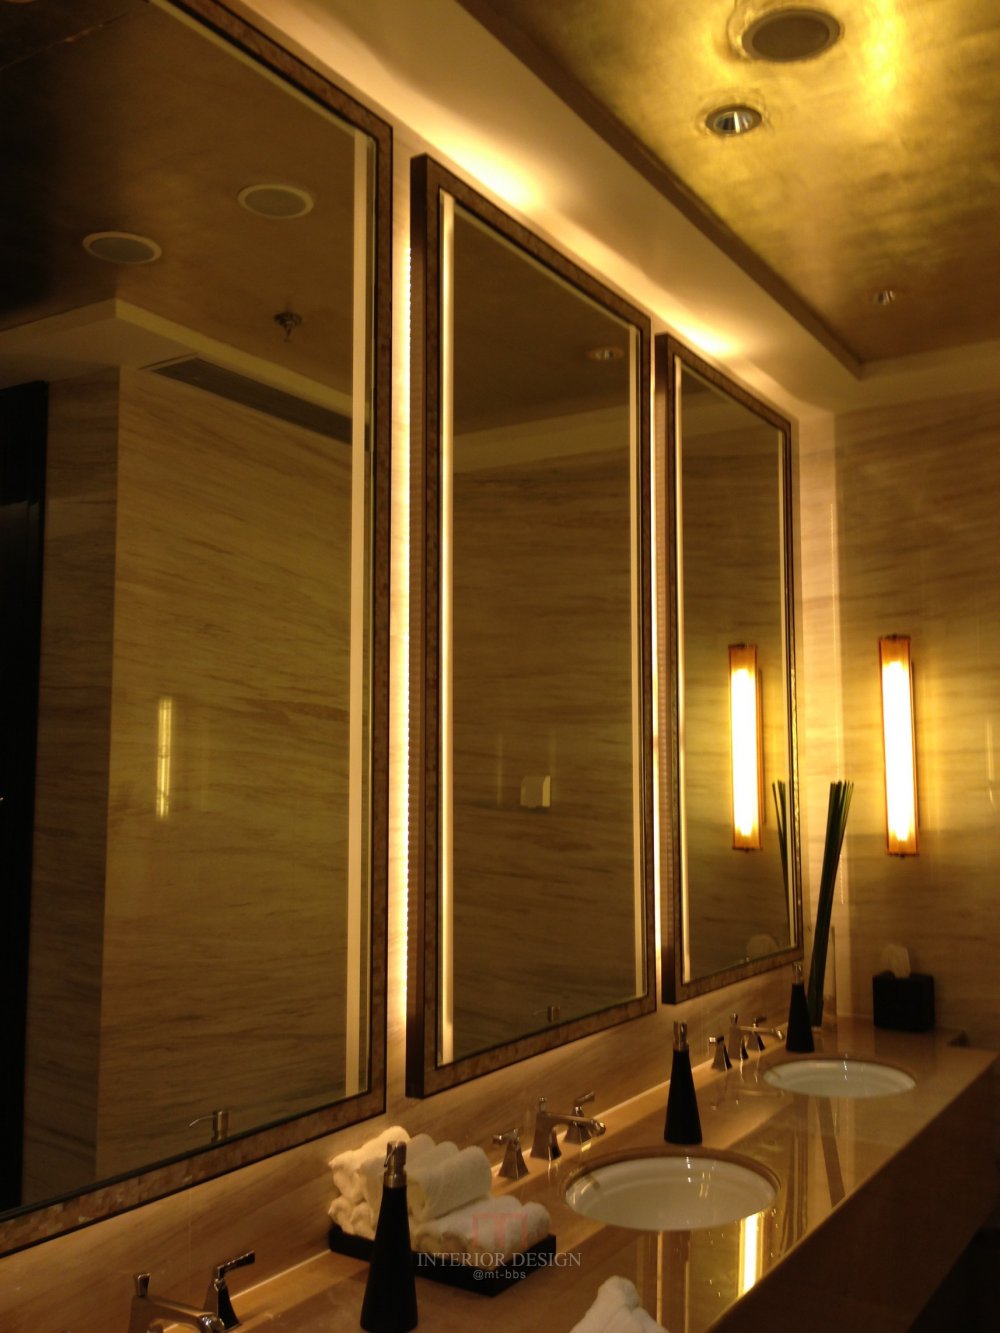 成都丽思卡尔顿酒店The Ritz-Carlton Chengdu(欢迎更新,高分奖励)_IMG_6395.JPG